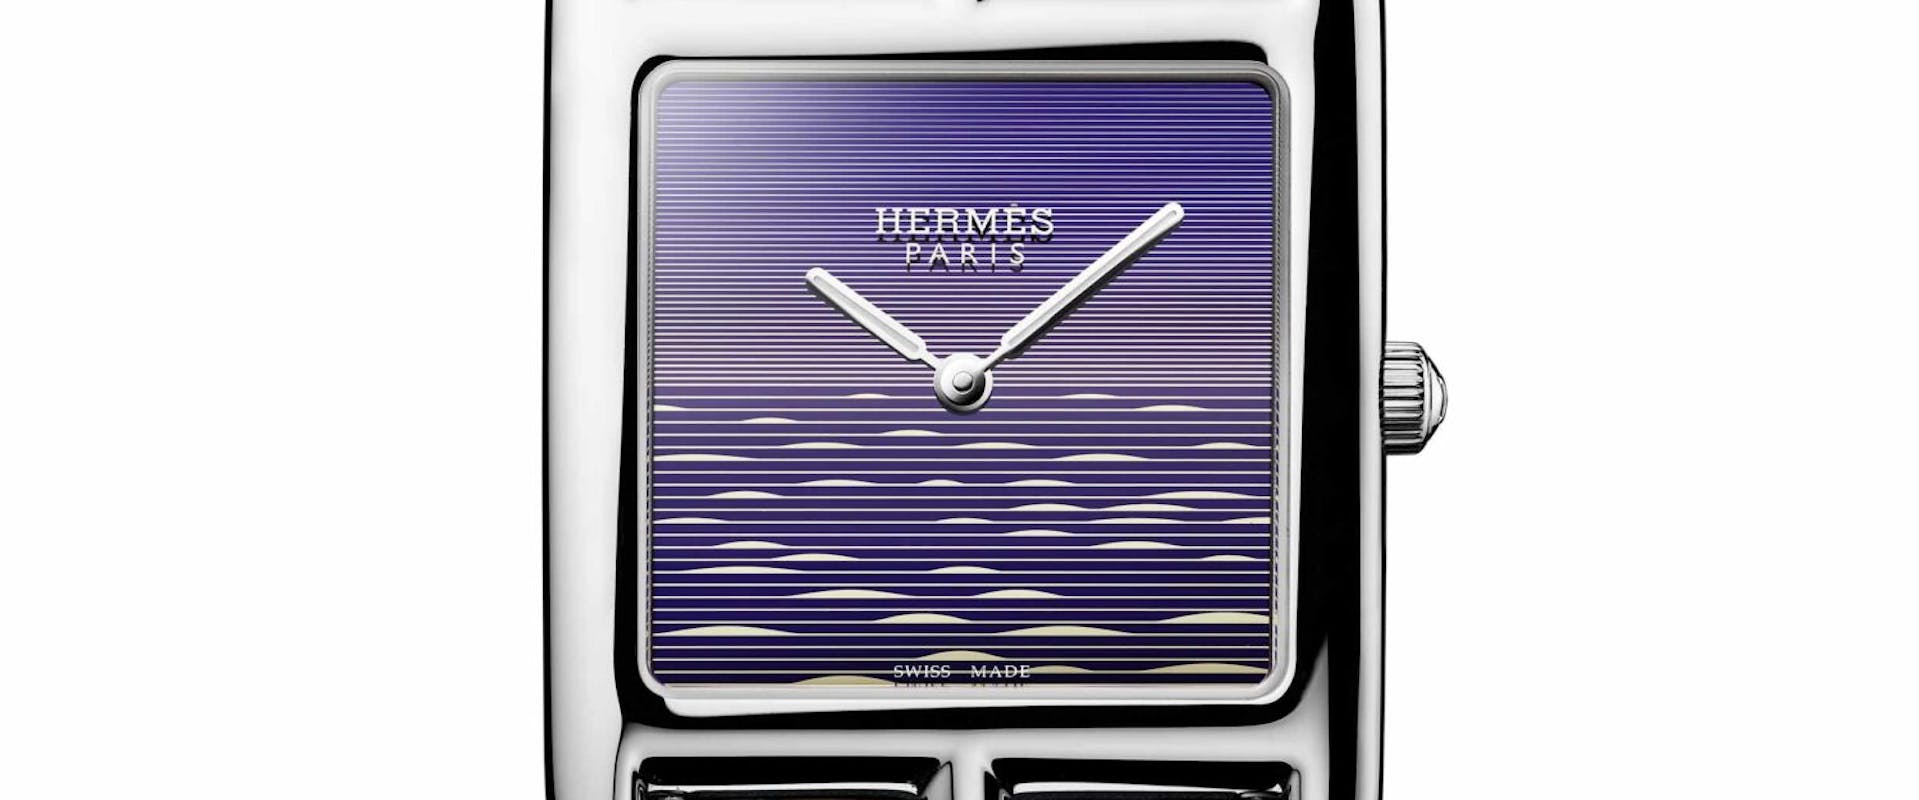 Cape Cod crépuscule, a Hermès watch